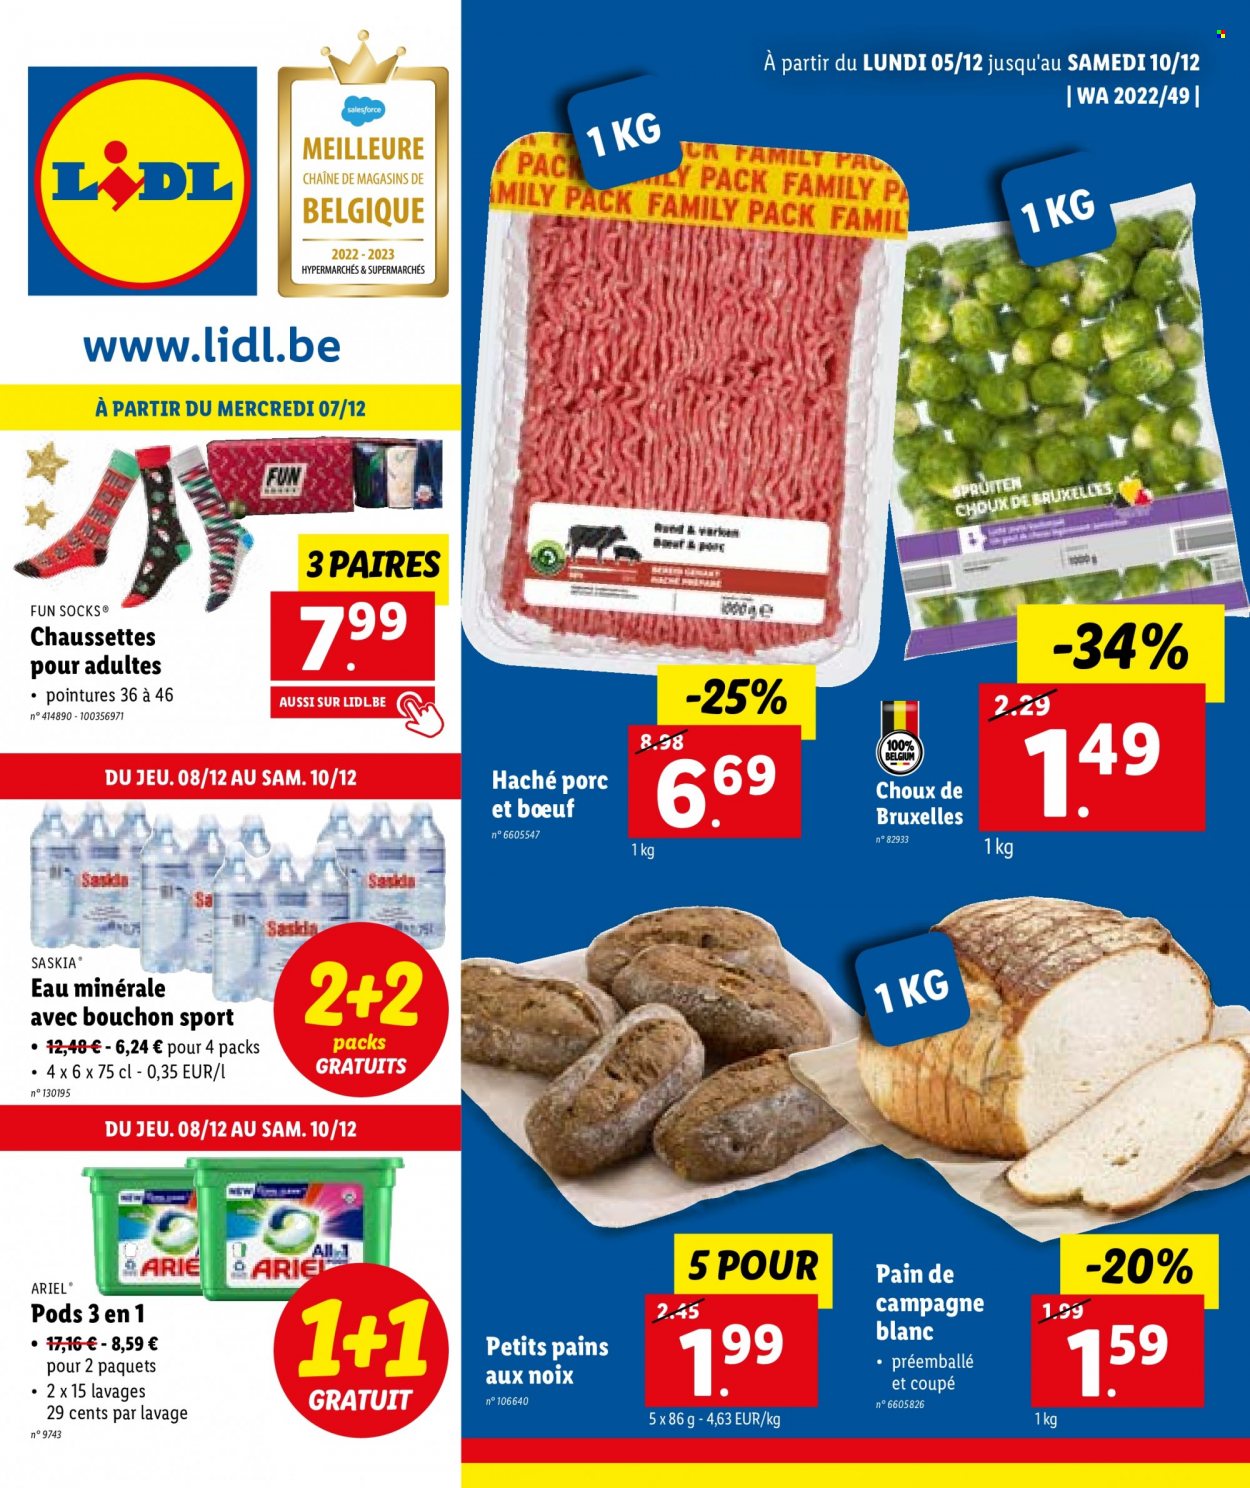 thumbnail - Catalogue Lidl - 05/12/2022 - 10/12/2022 - Produits soldés - choux de bruxelles, pain, eau minérale, tablettes de lavage, chaussettes, Ariel. Page 1.